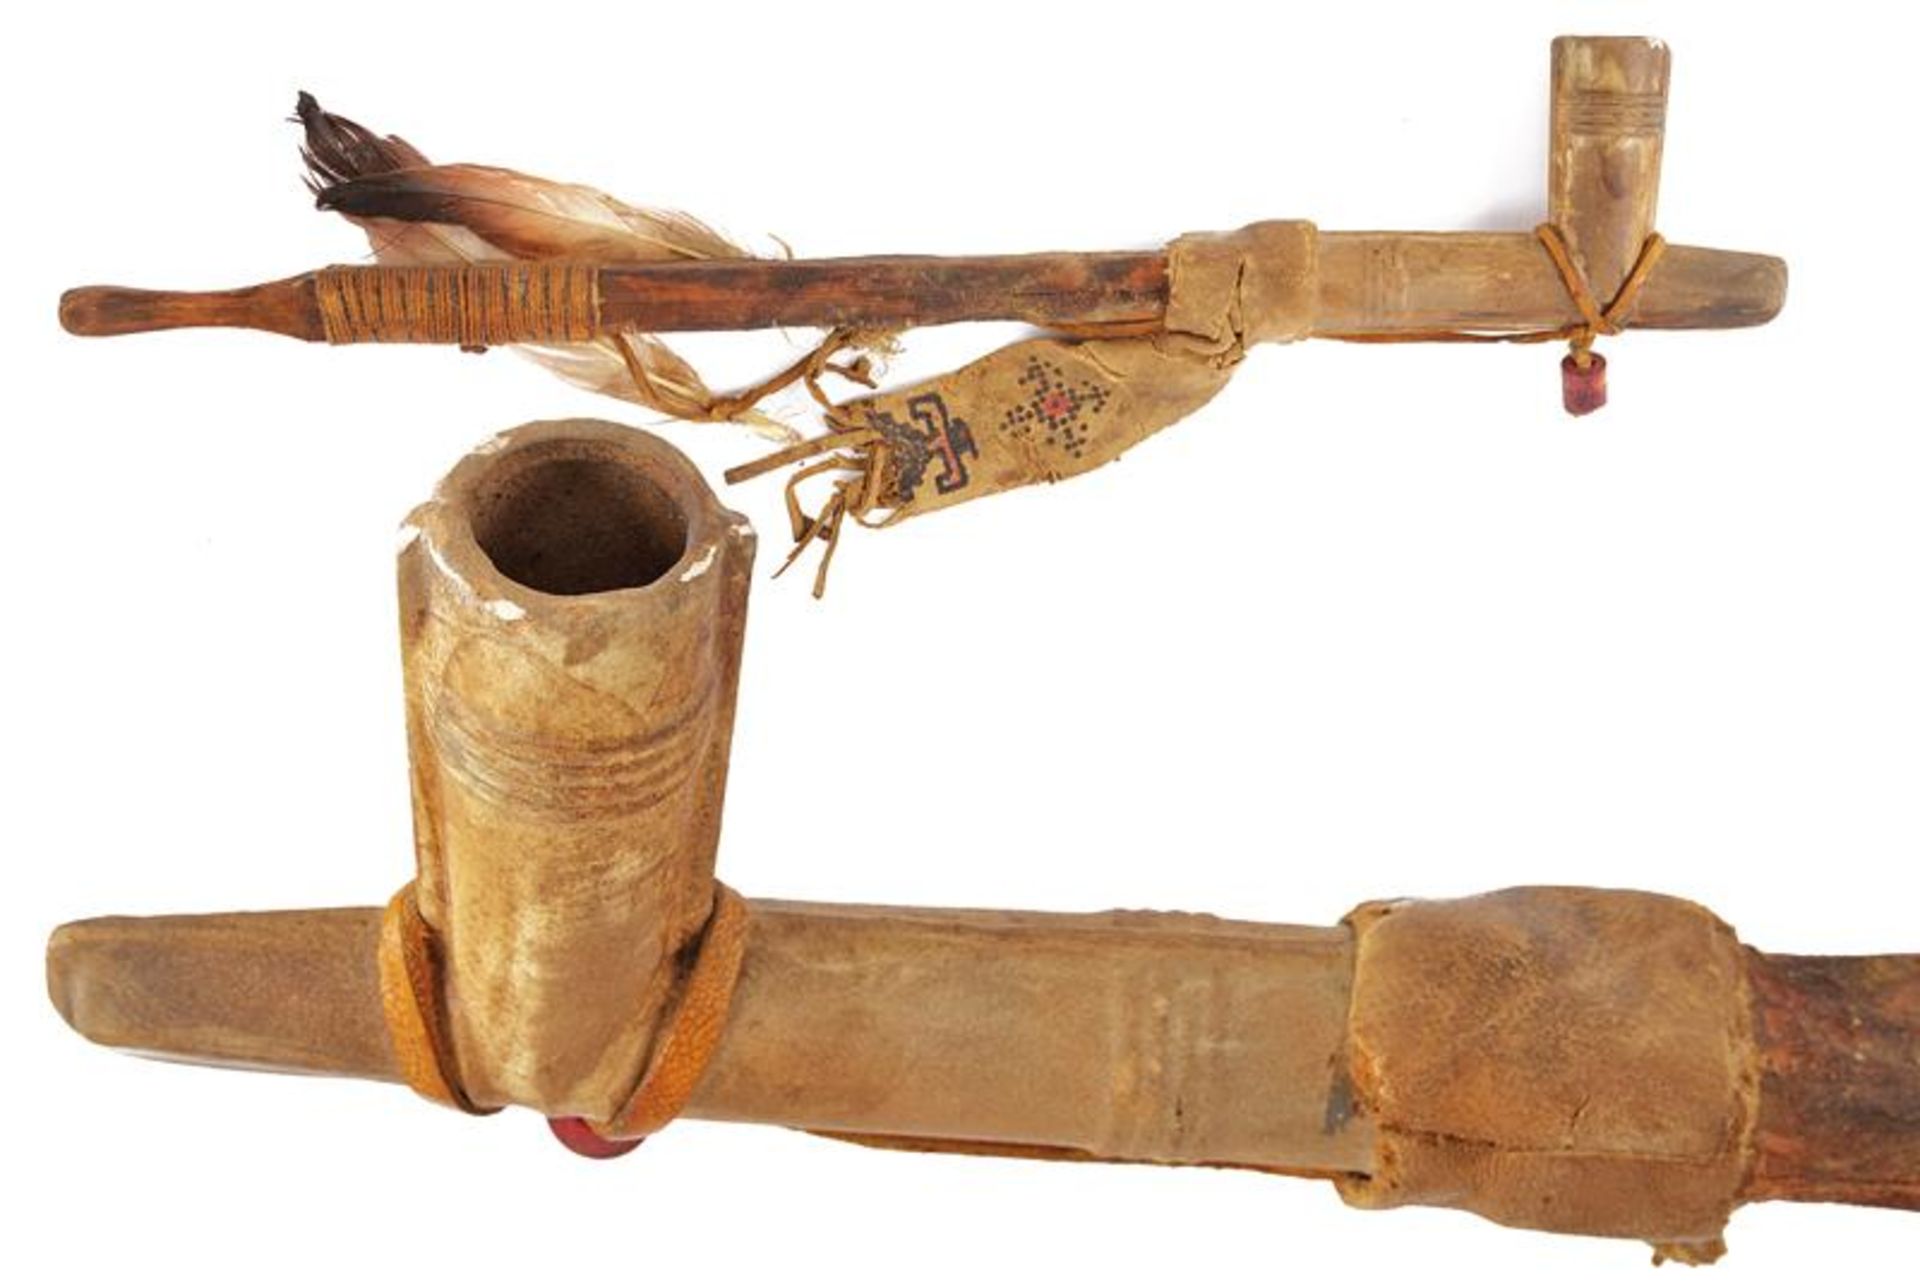 A Lakota Sioux peace pipe